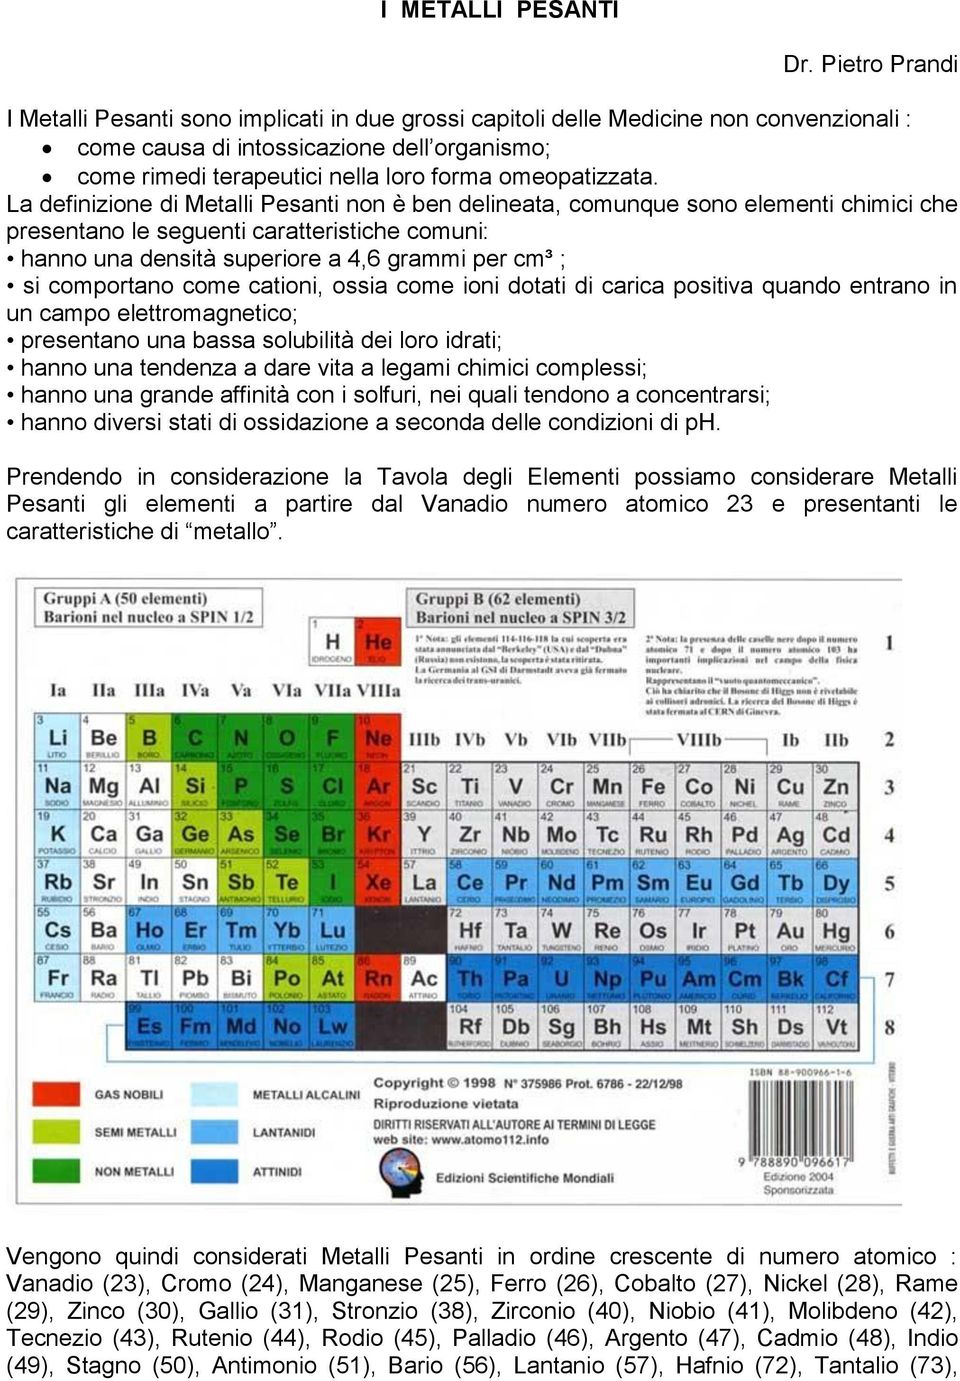 I Metalli Pesanti Dr Pietro Prandi Pdf Free Download